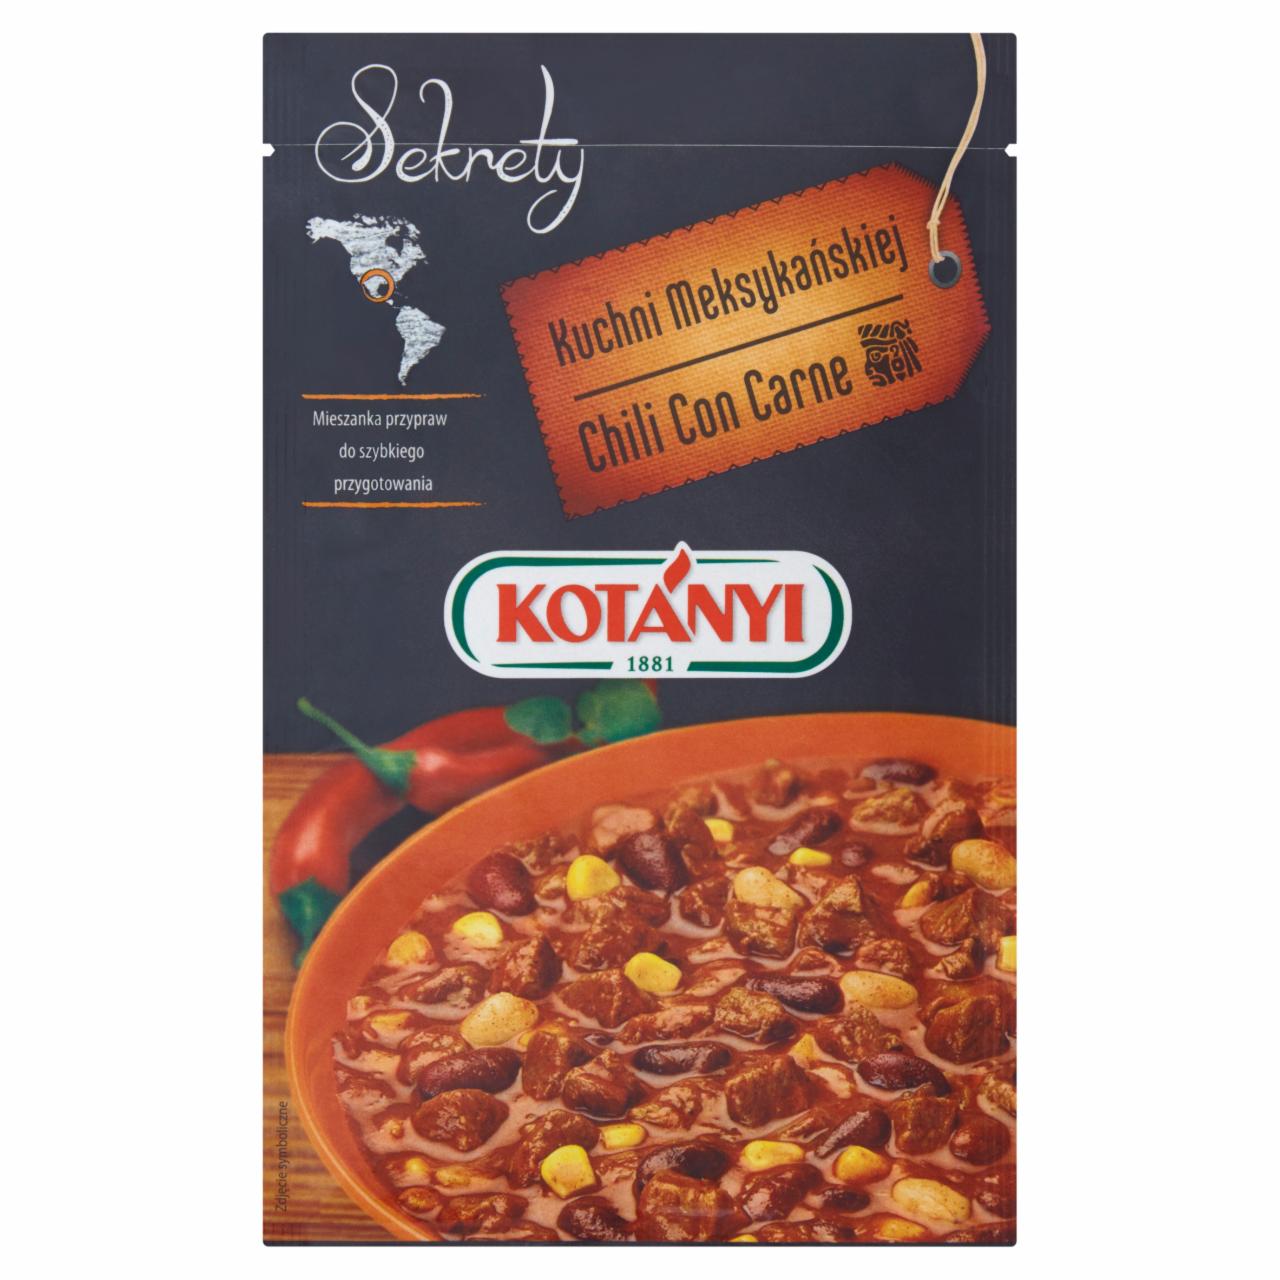 Zdjęcia - Kotányi Sekrety Kuchni Meksykańskiej Chili Con Carne Mieszanka przypraw 25 g